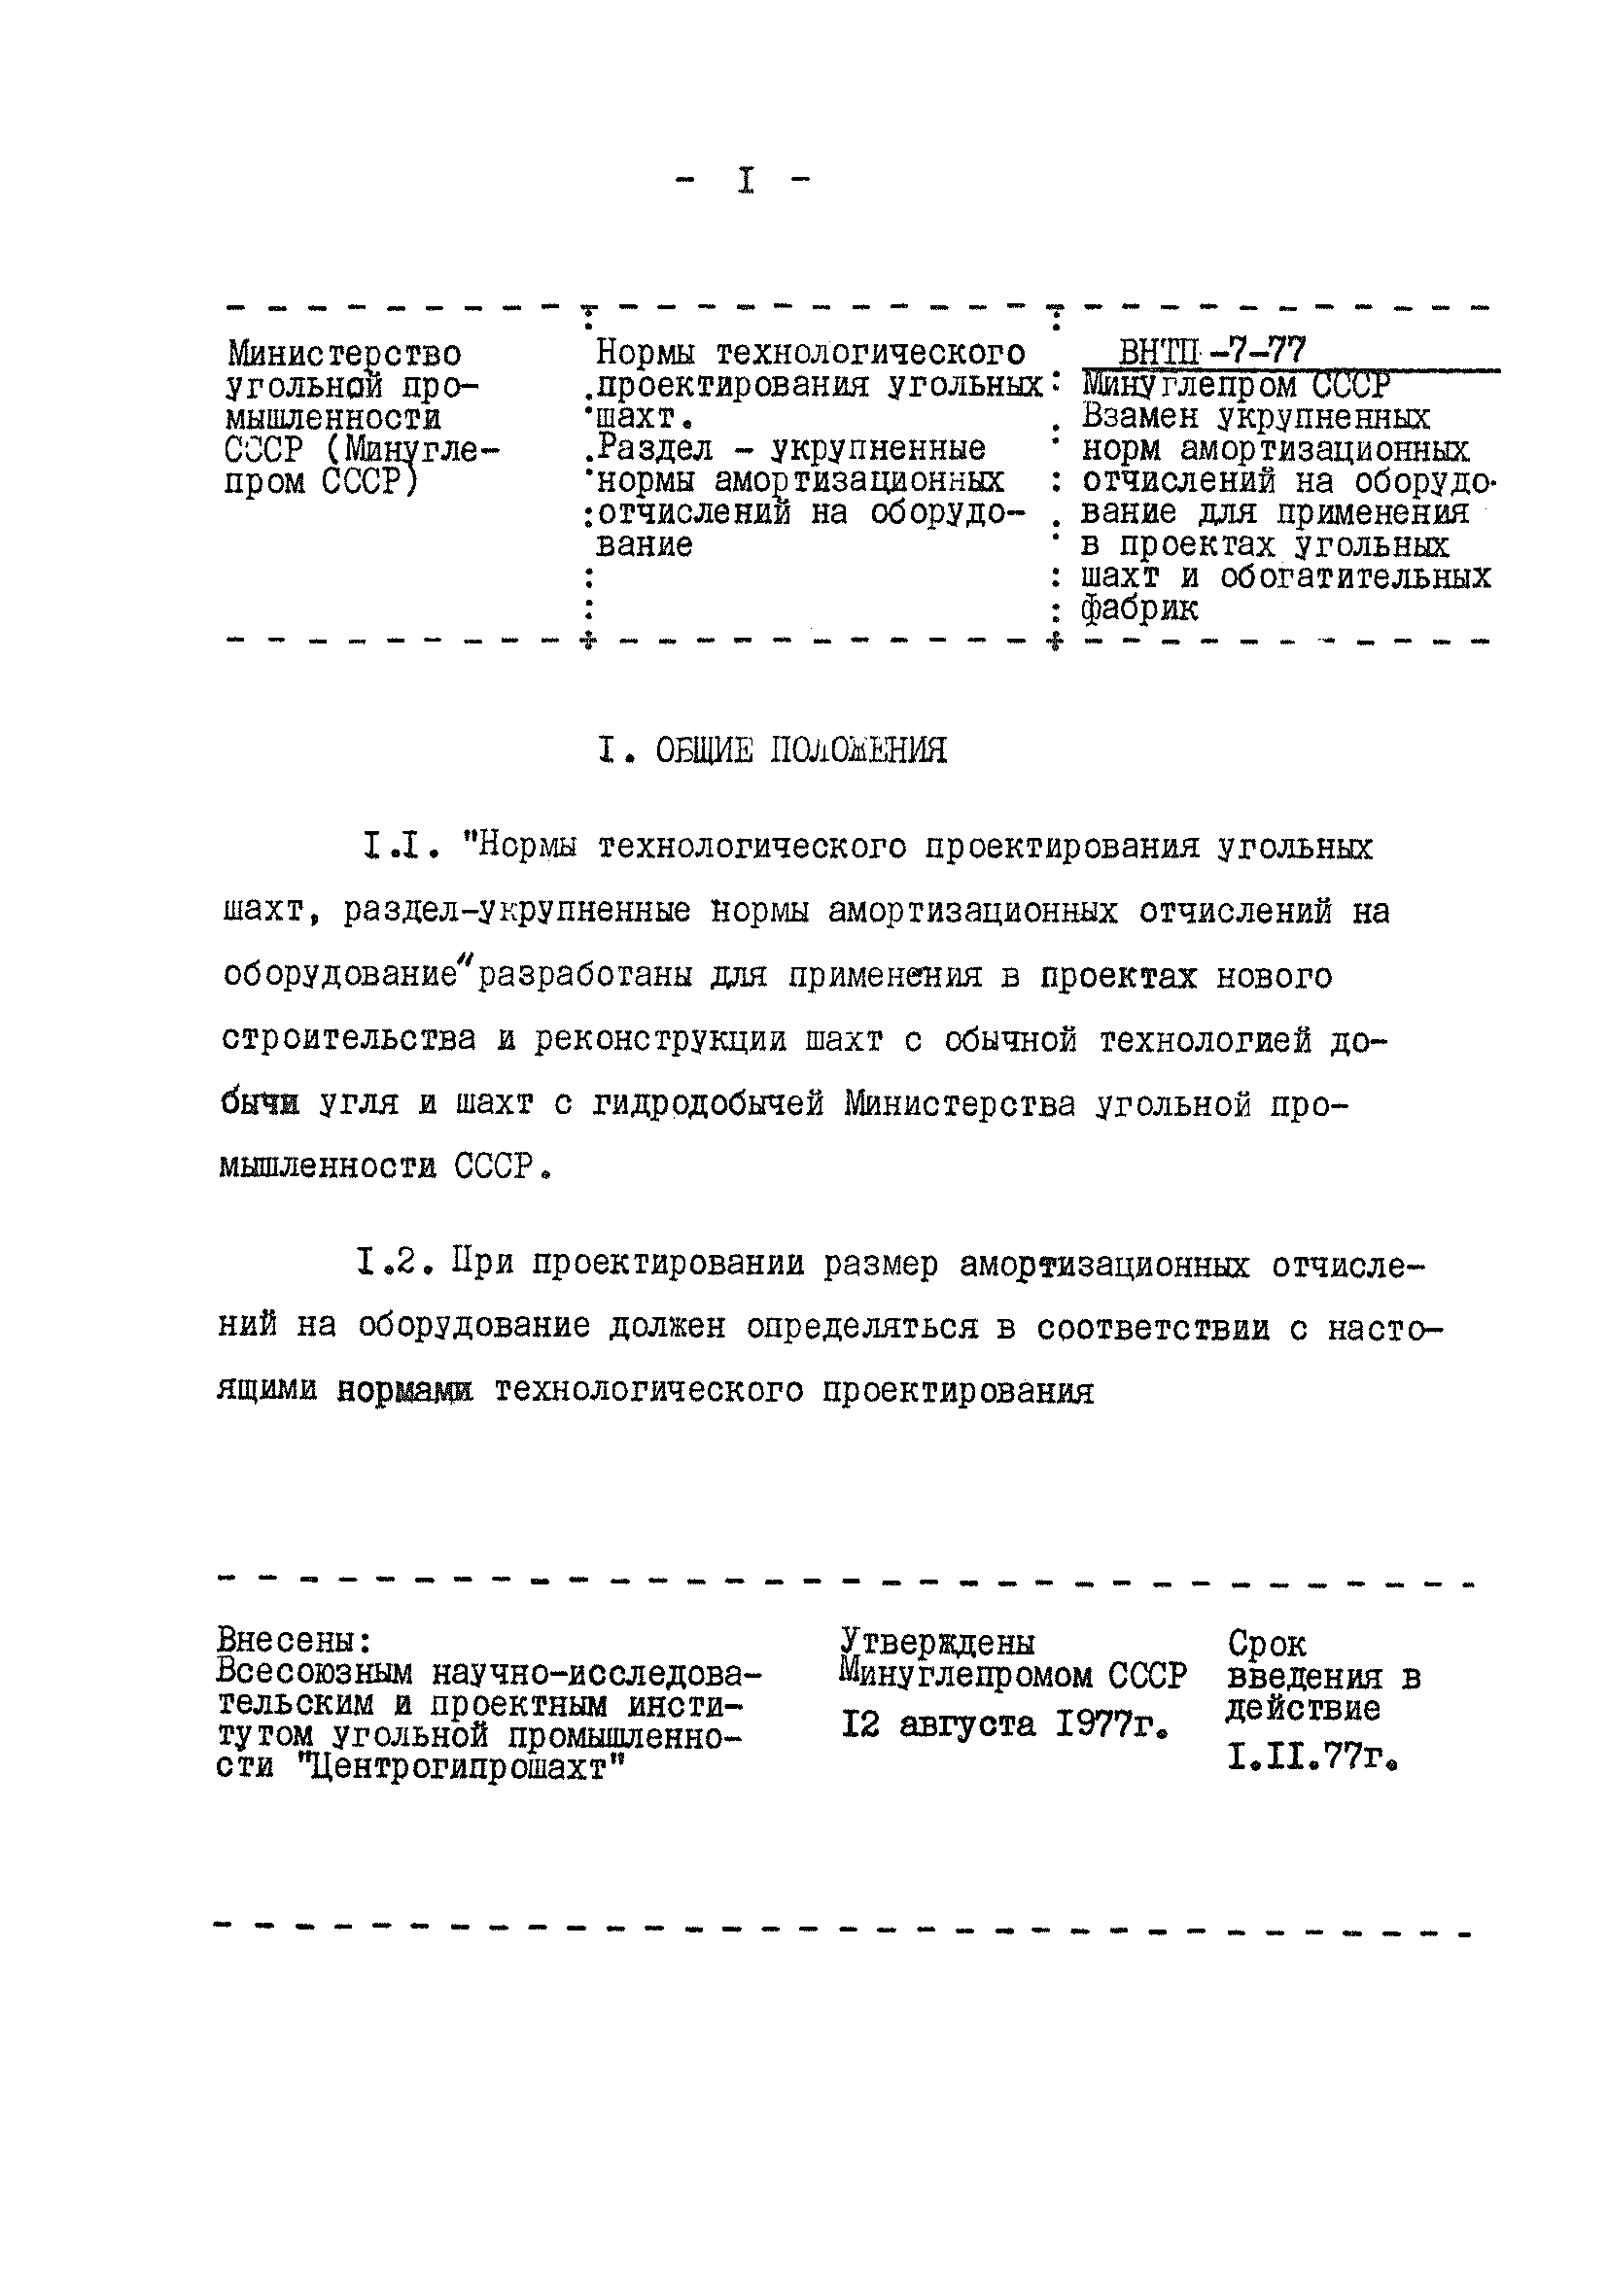 ВНТП 7-77